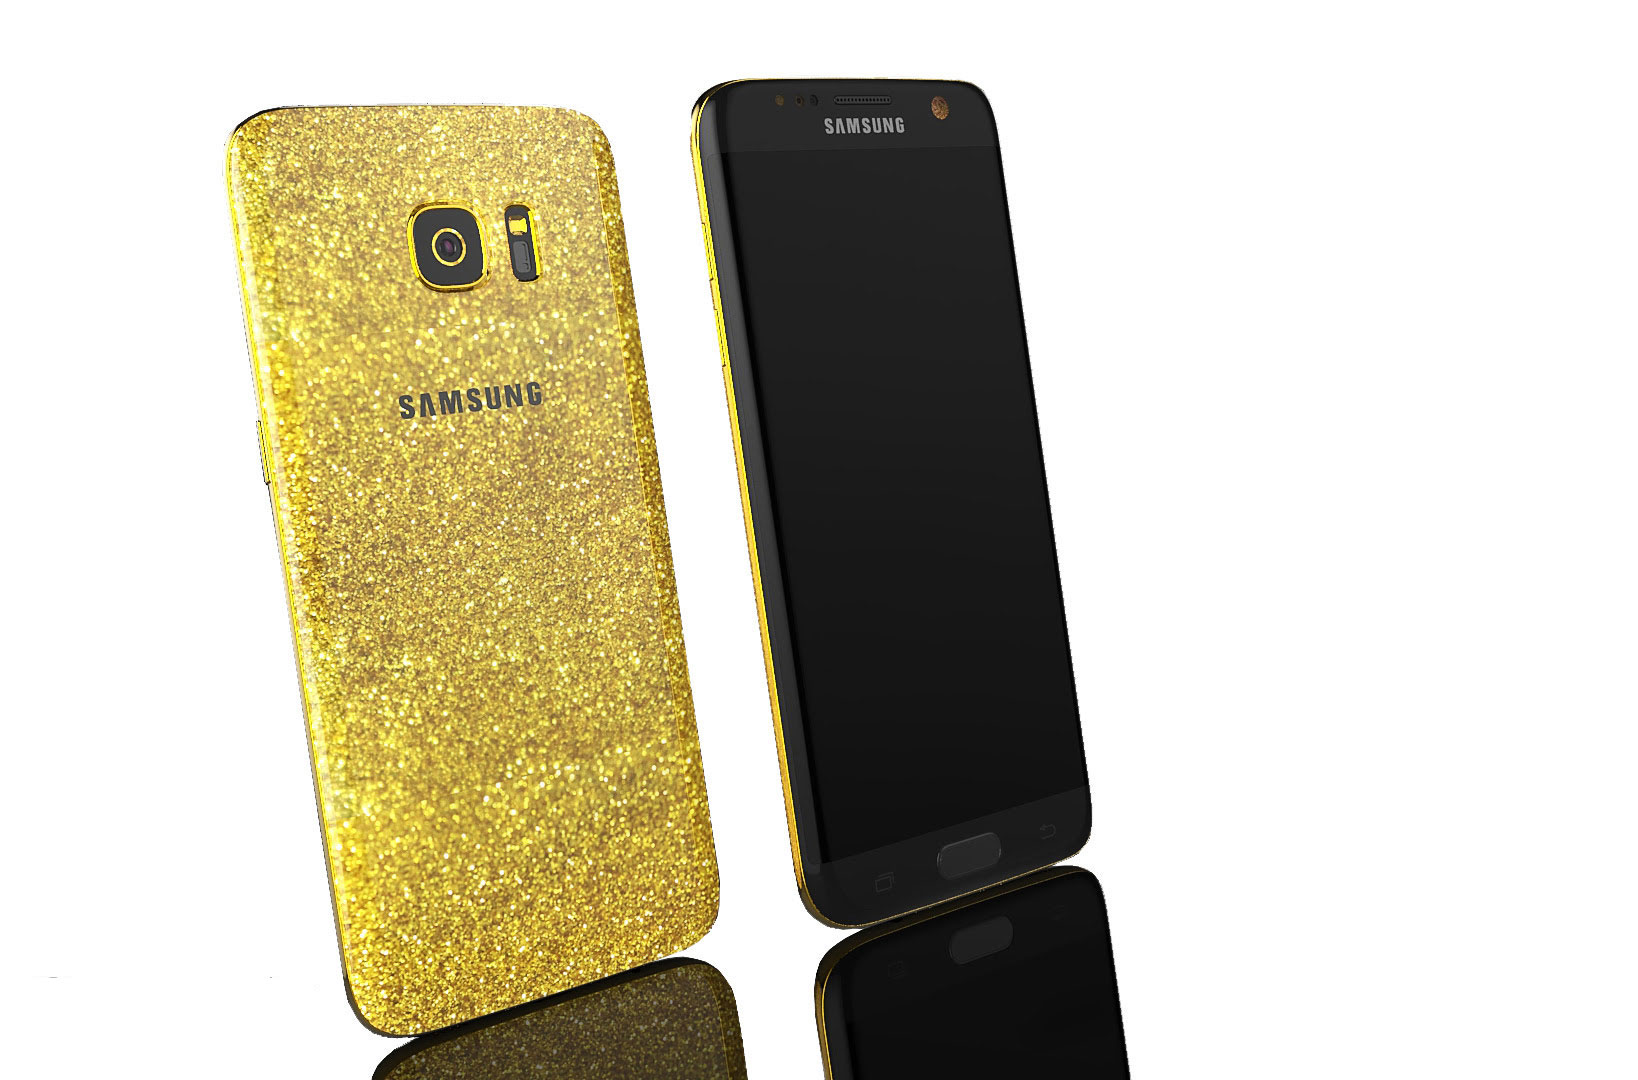 Galaxy gold 3. Samsung Gold. Galaxy s7 золотой. Самсунг золотистый смартфон. Самсунг золотого цвета а8.